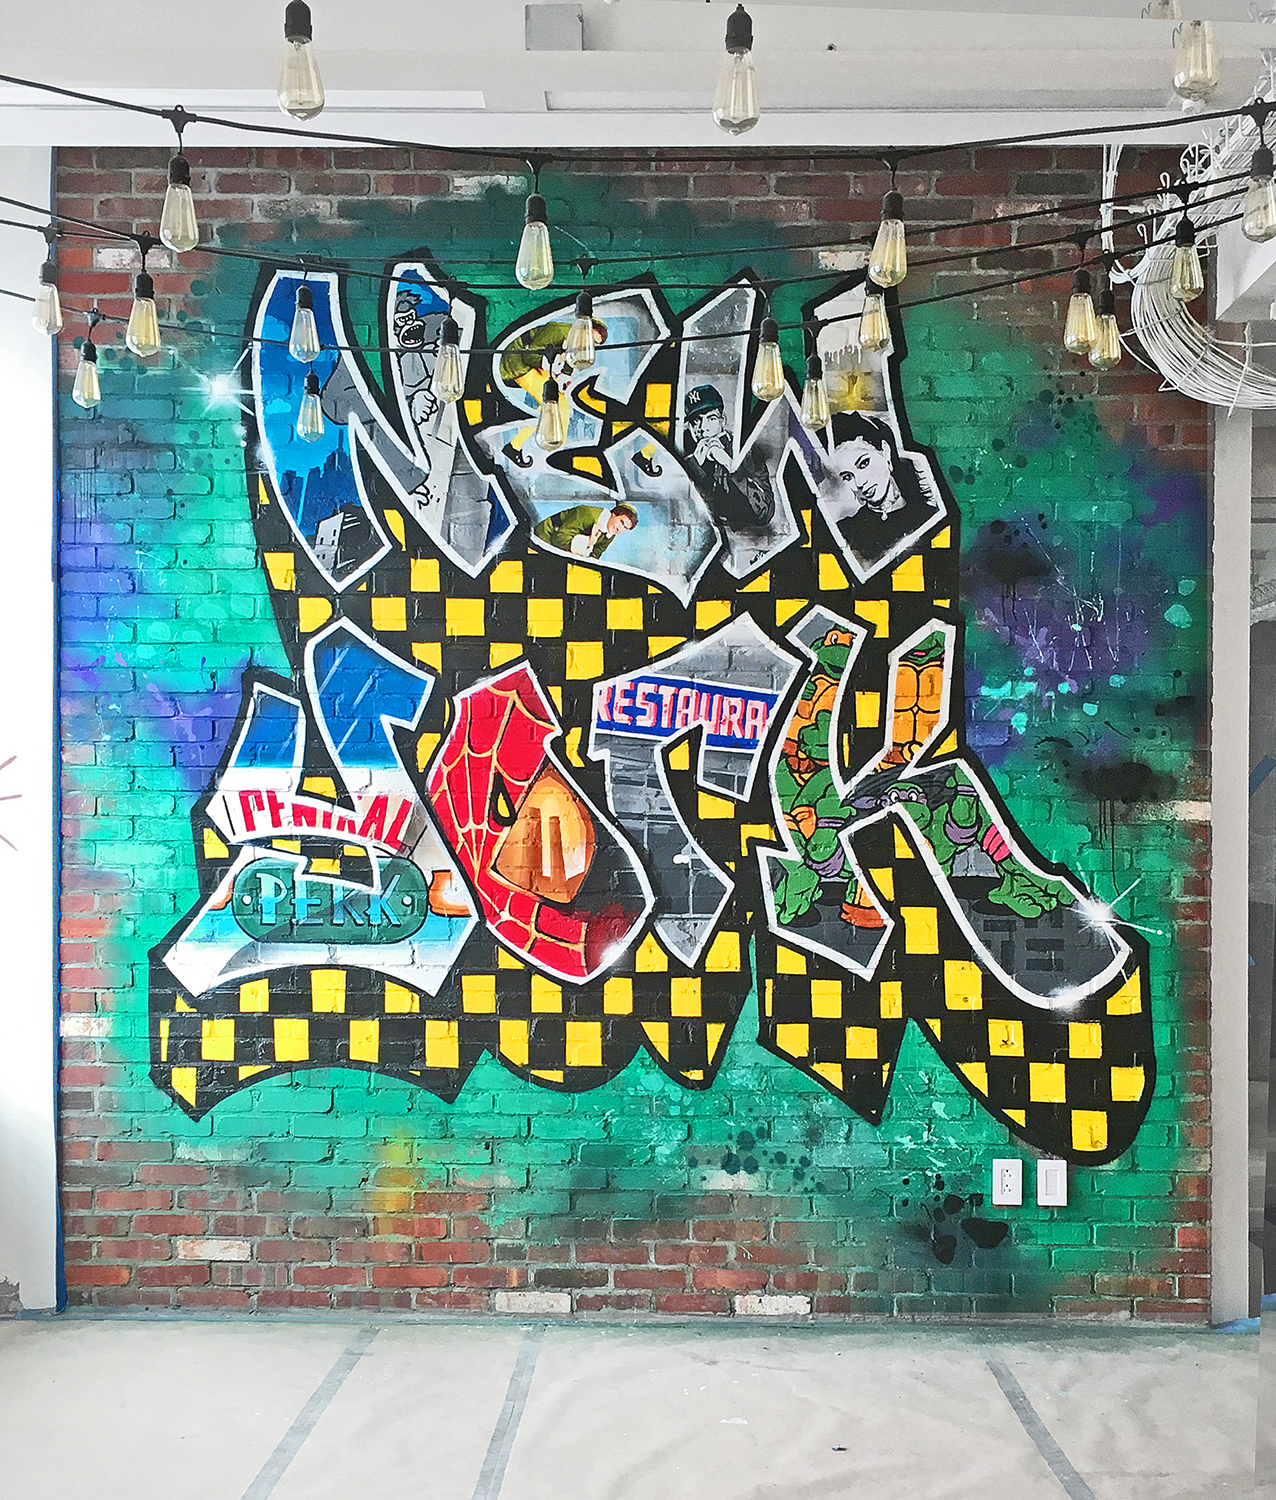 Graffiti New York